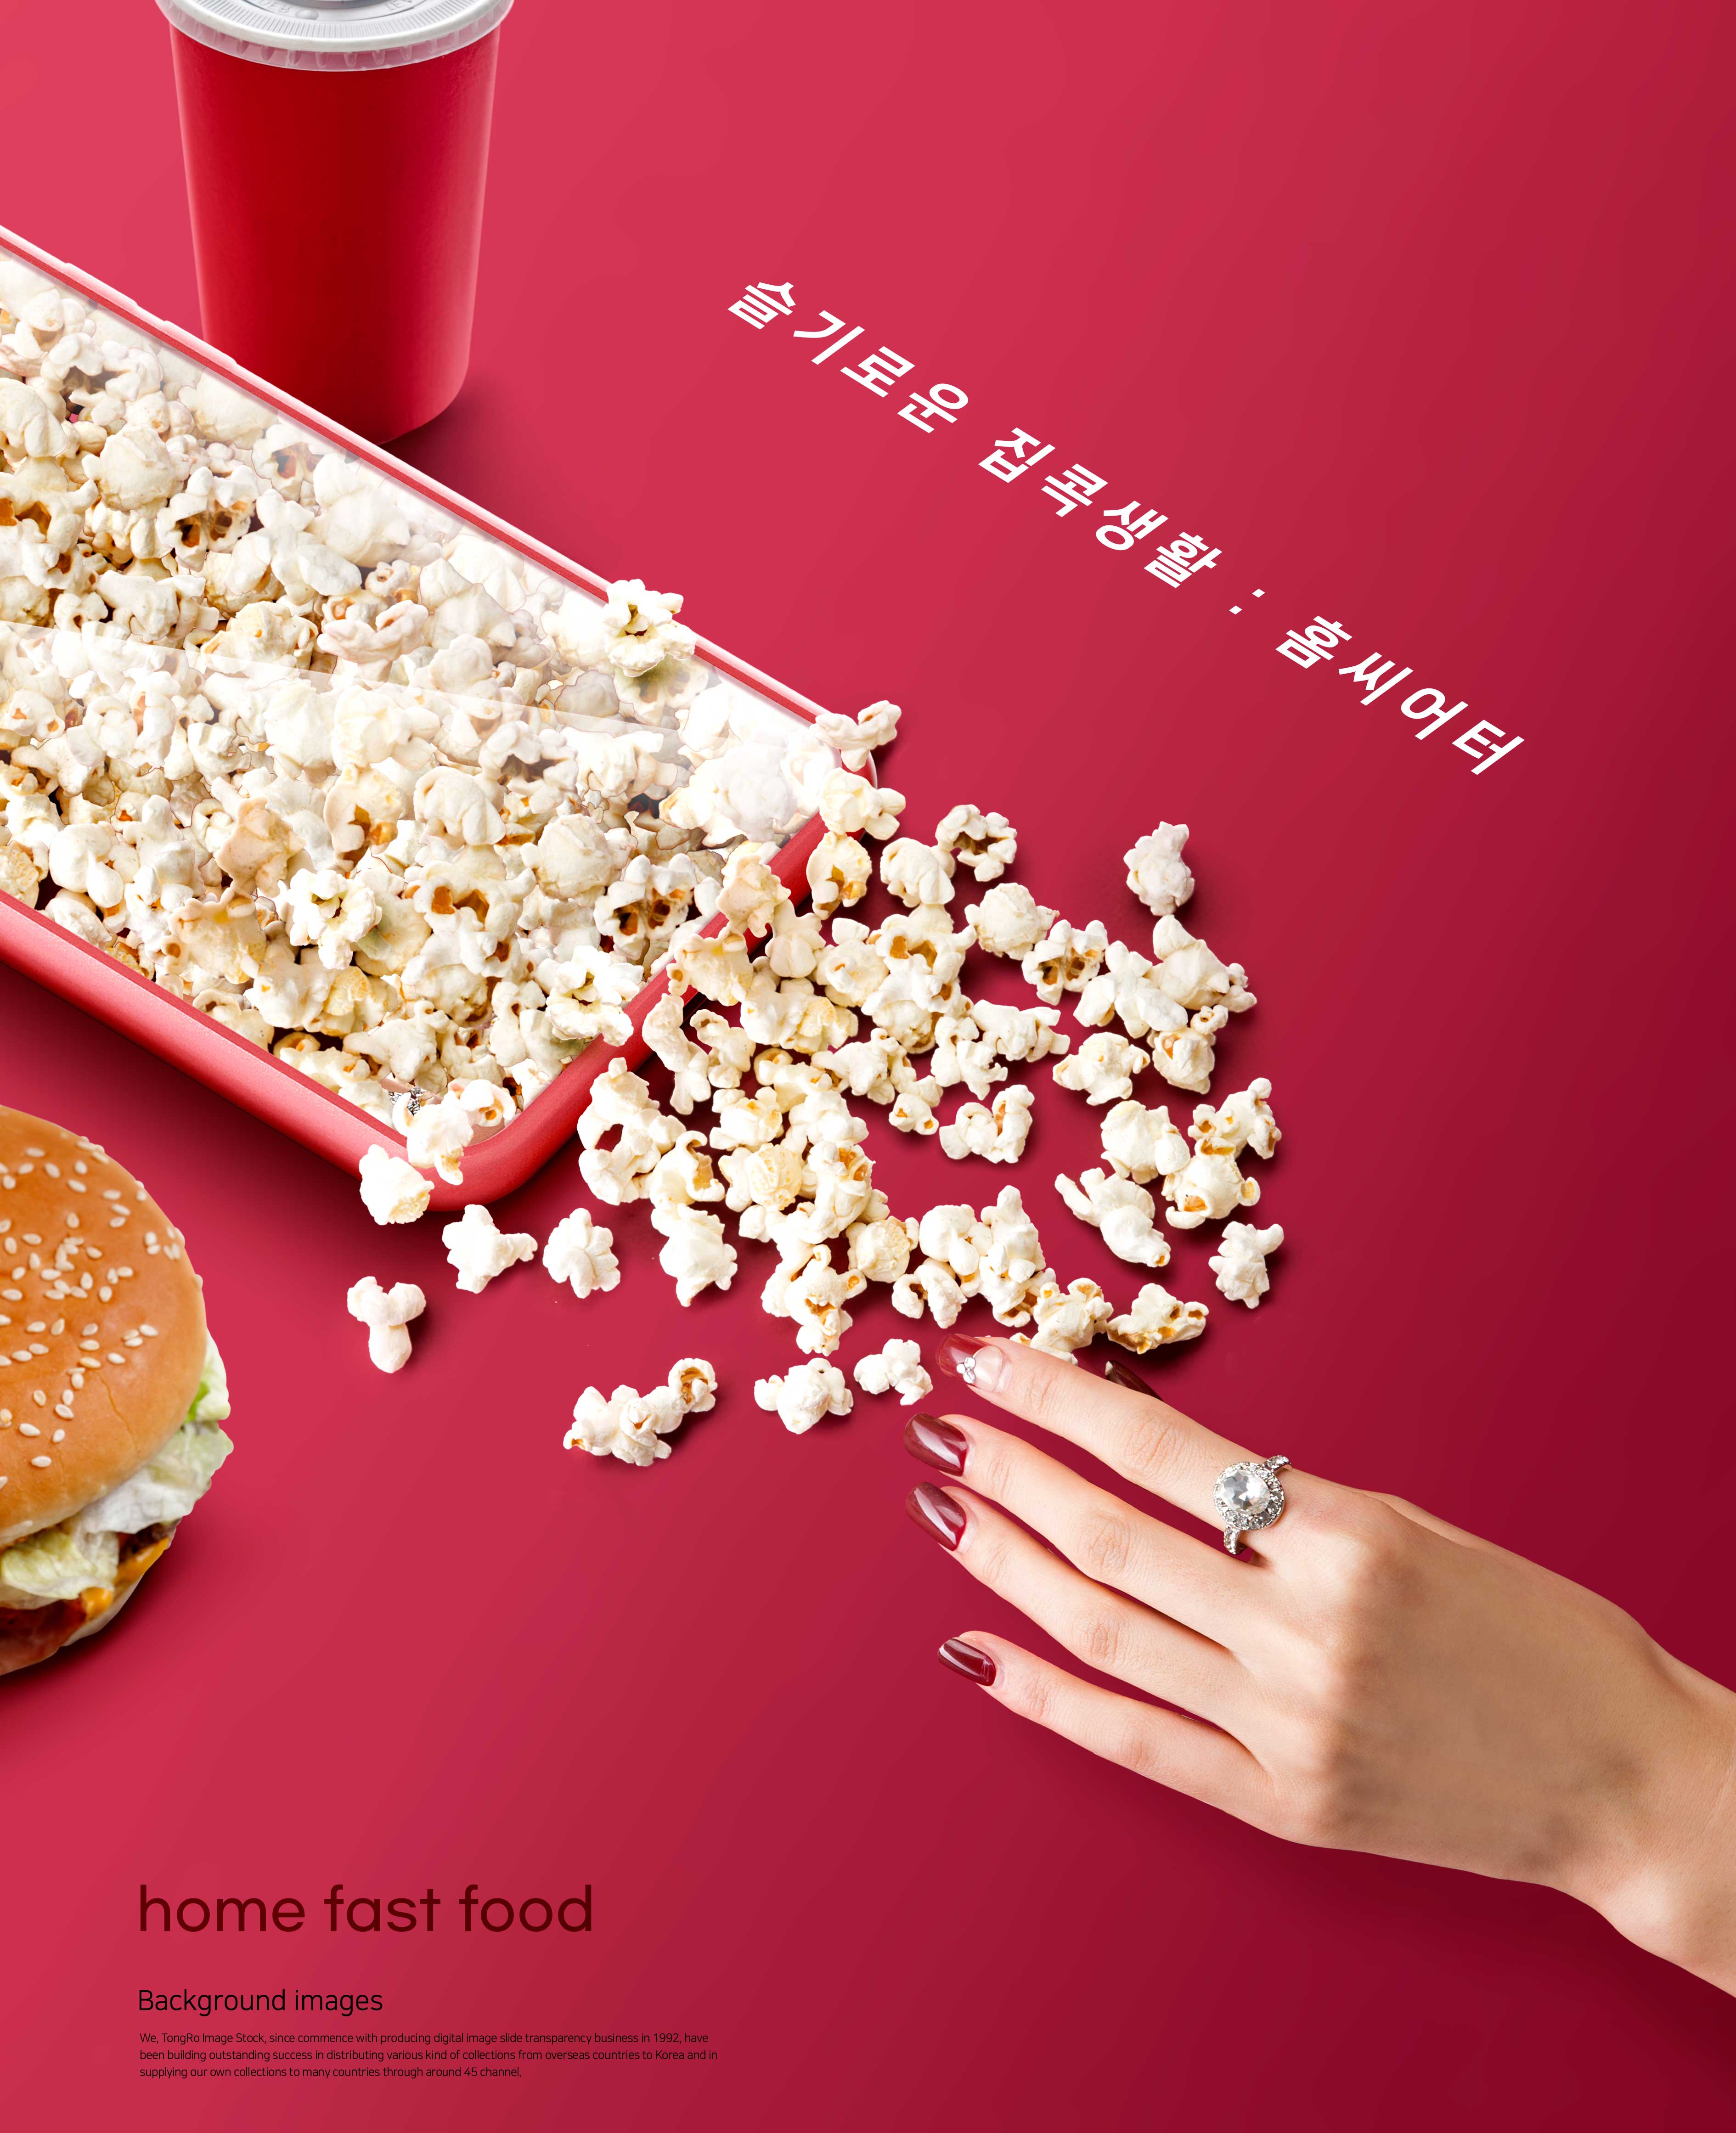 爆米花食品家庭快餐海报主题设计韩国素材设计素材模板